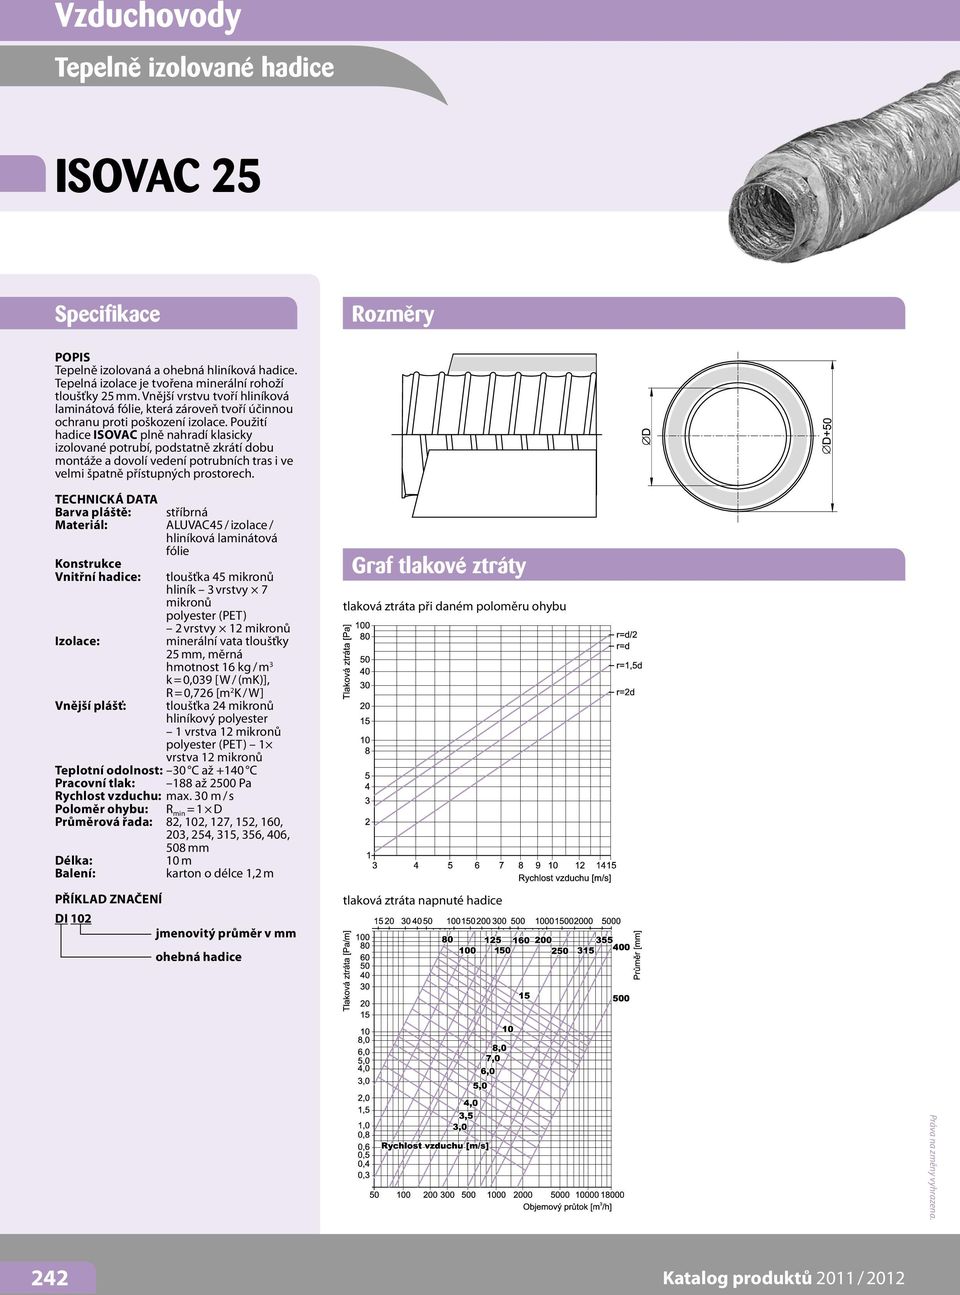 Použití hadice ISOVAC plně nahradí klasicky izolované potrubí, podstatně zkrátí dobu montáže a dovolí vedení potrubních tras i ve velmi špatně přístupných prostorech.